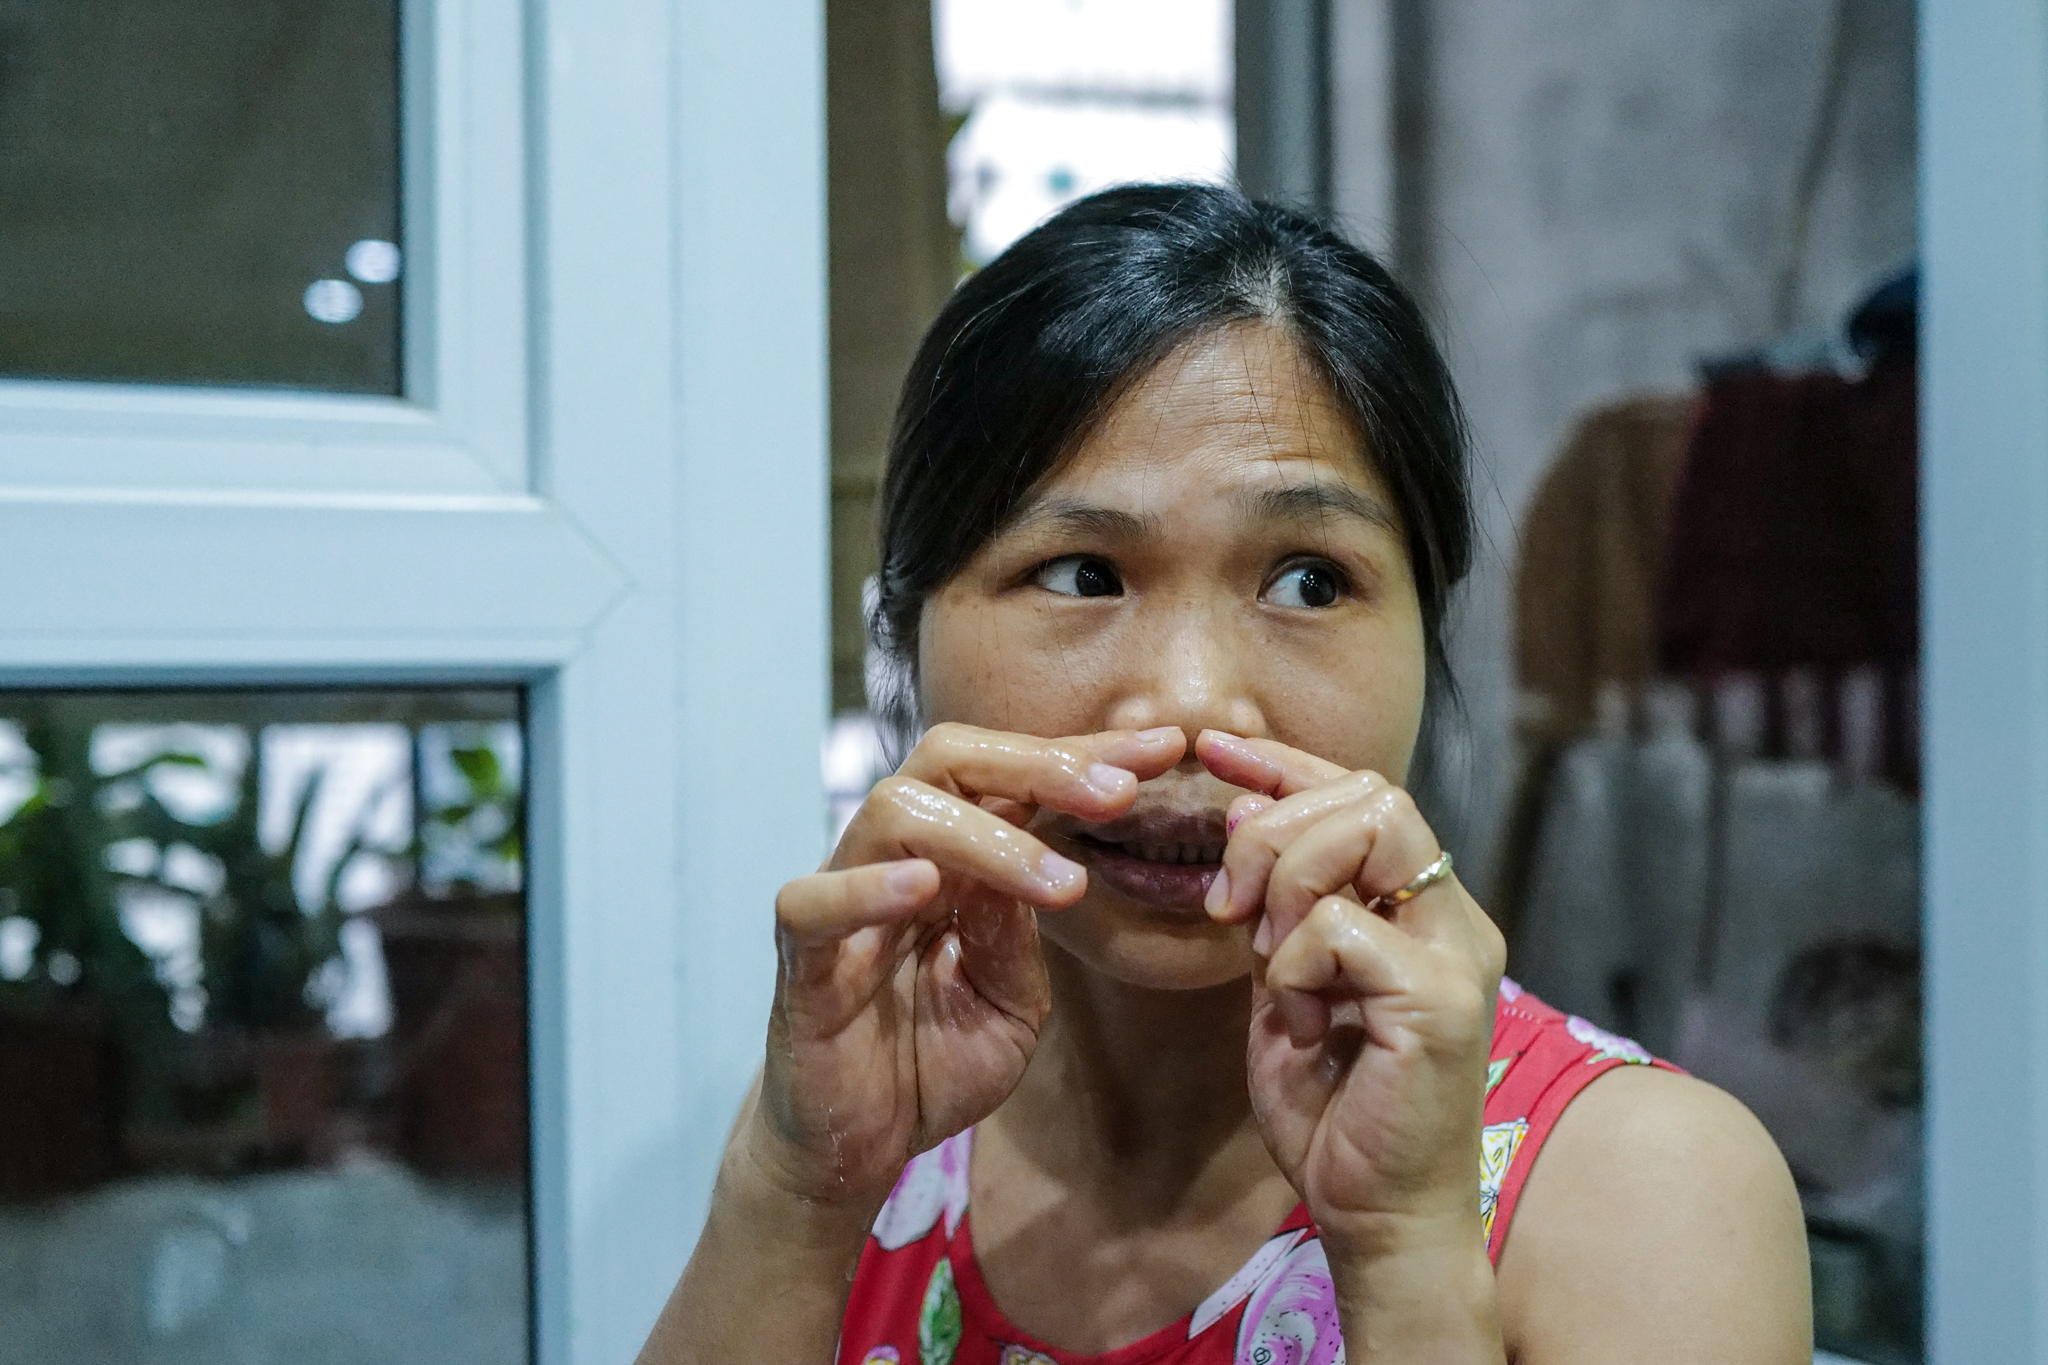 Chị Nguyễn Kiều Hoa, cư dân tại khu HH Linh Đàm cho biết từ 10/10 đã phát hiện nước có mùi thuốc trừ sâu nồng nặc. Đến hiện tại, tuy mùi đã giảm nhưng chị và gia đình vẫn chưa dám sử dụng lại.